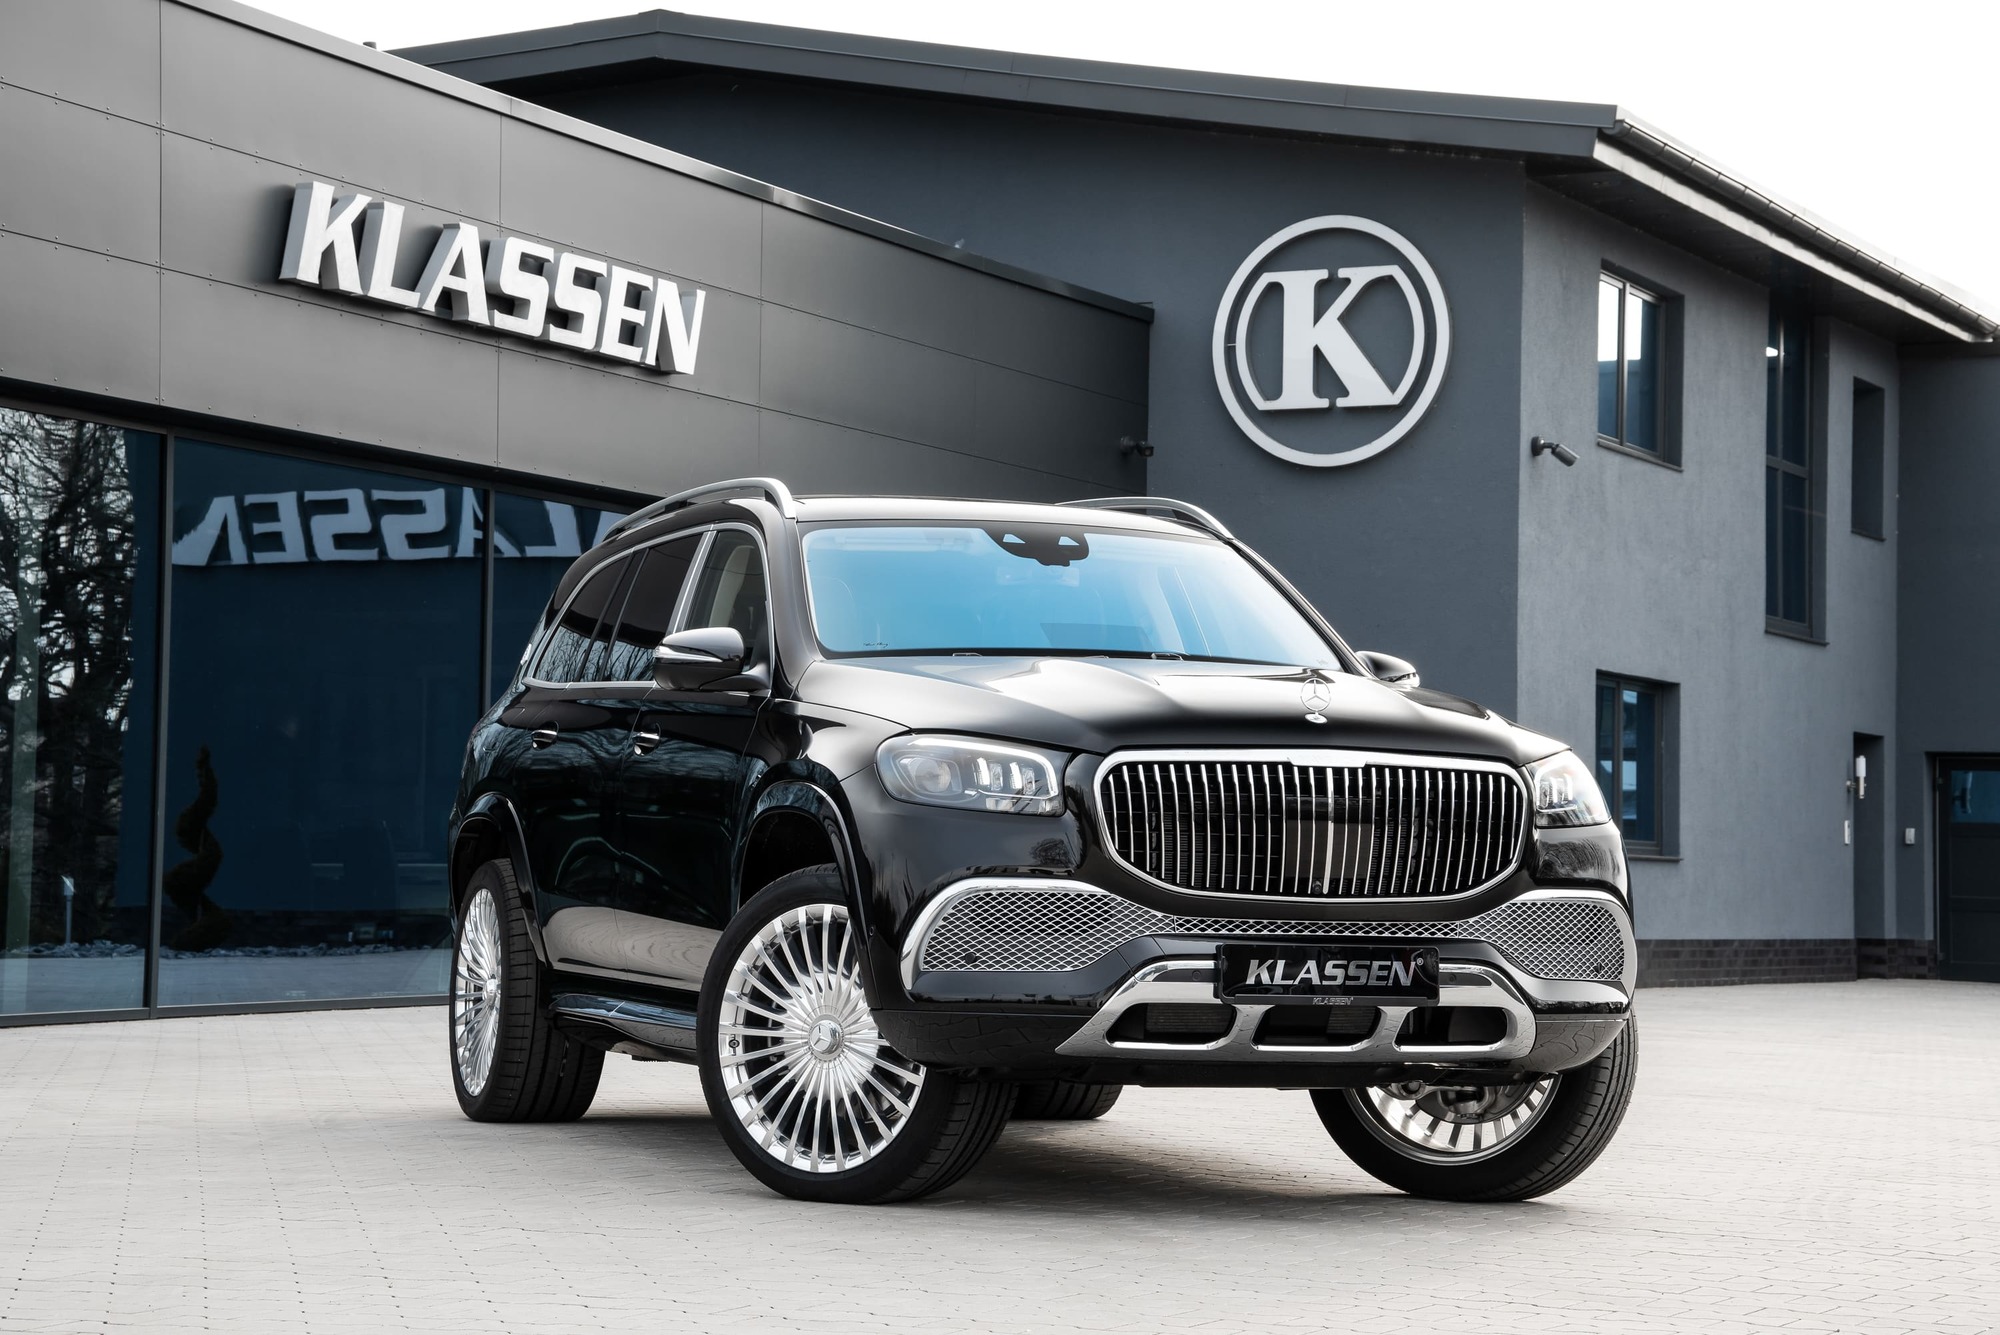 KLASSEN Luxury VIP Cars and Vans 